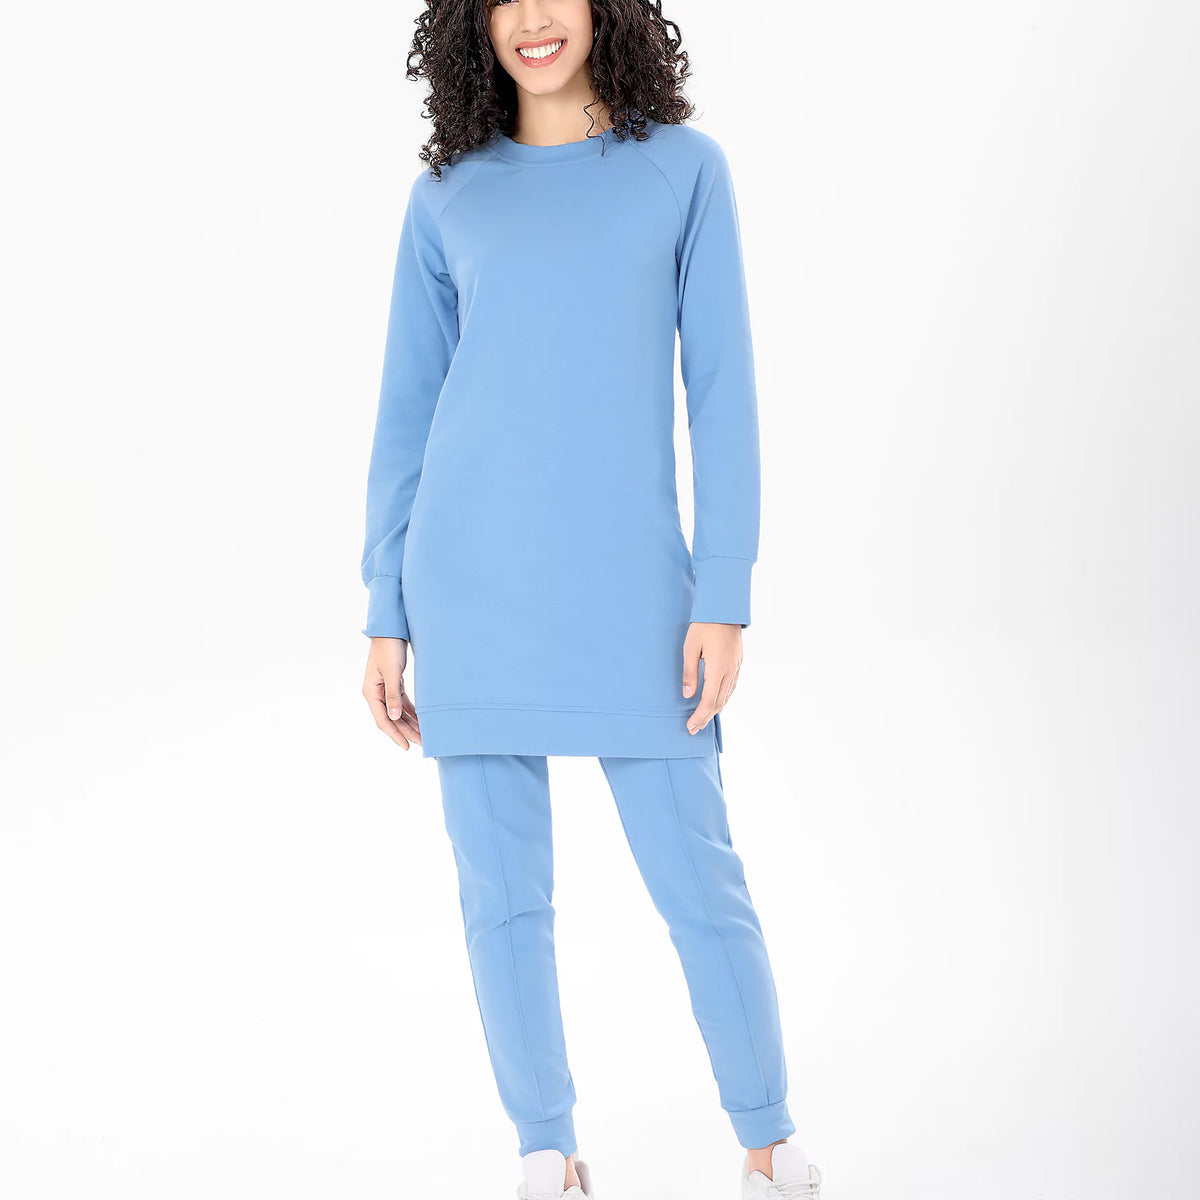 Sykooria Womens Shirt XL Blue Lounge Wear Soft Long Sleeve Velour A14